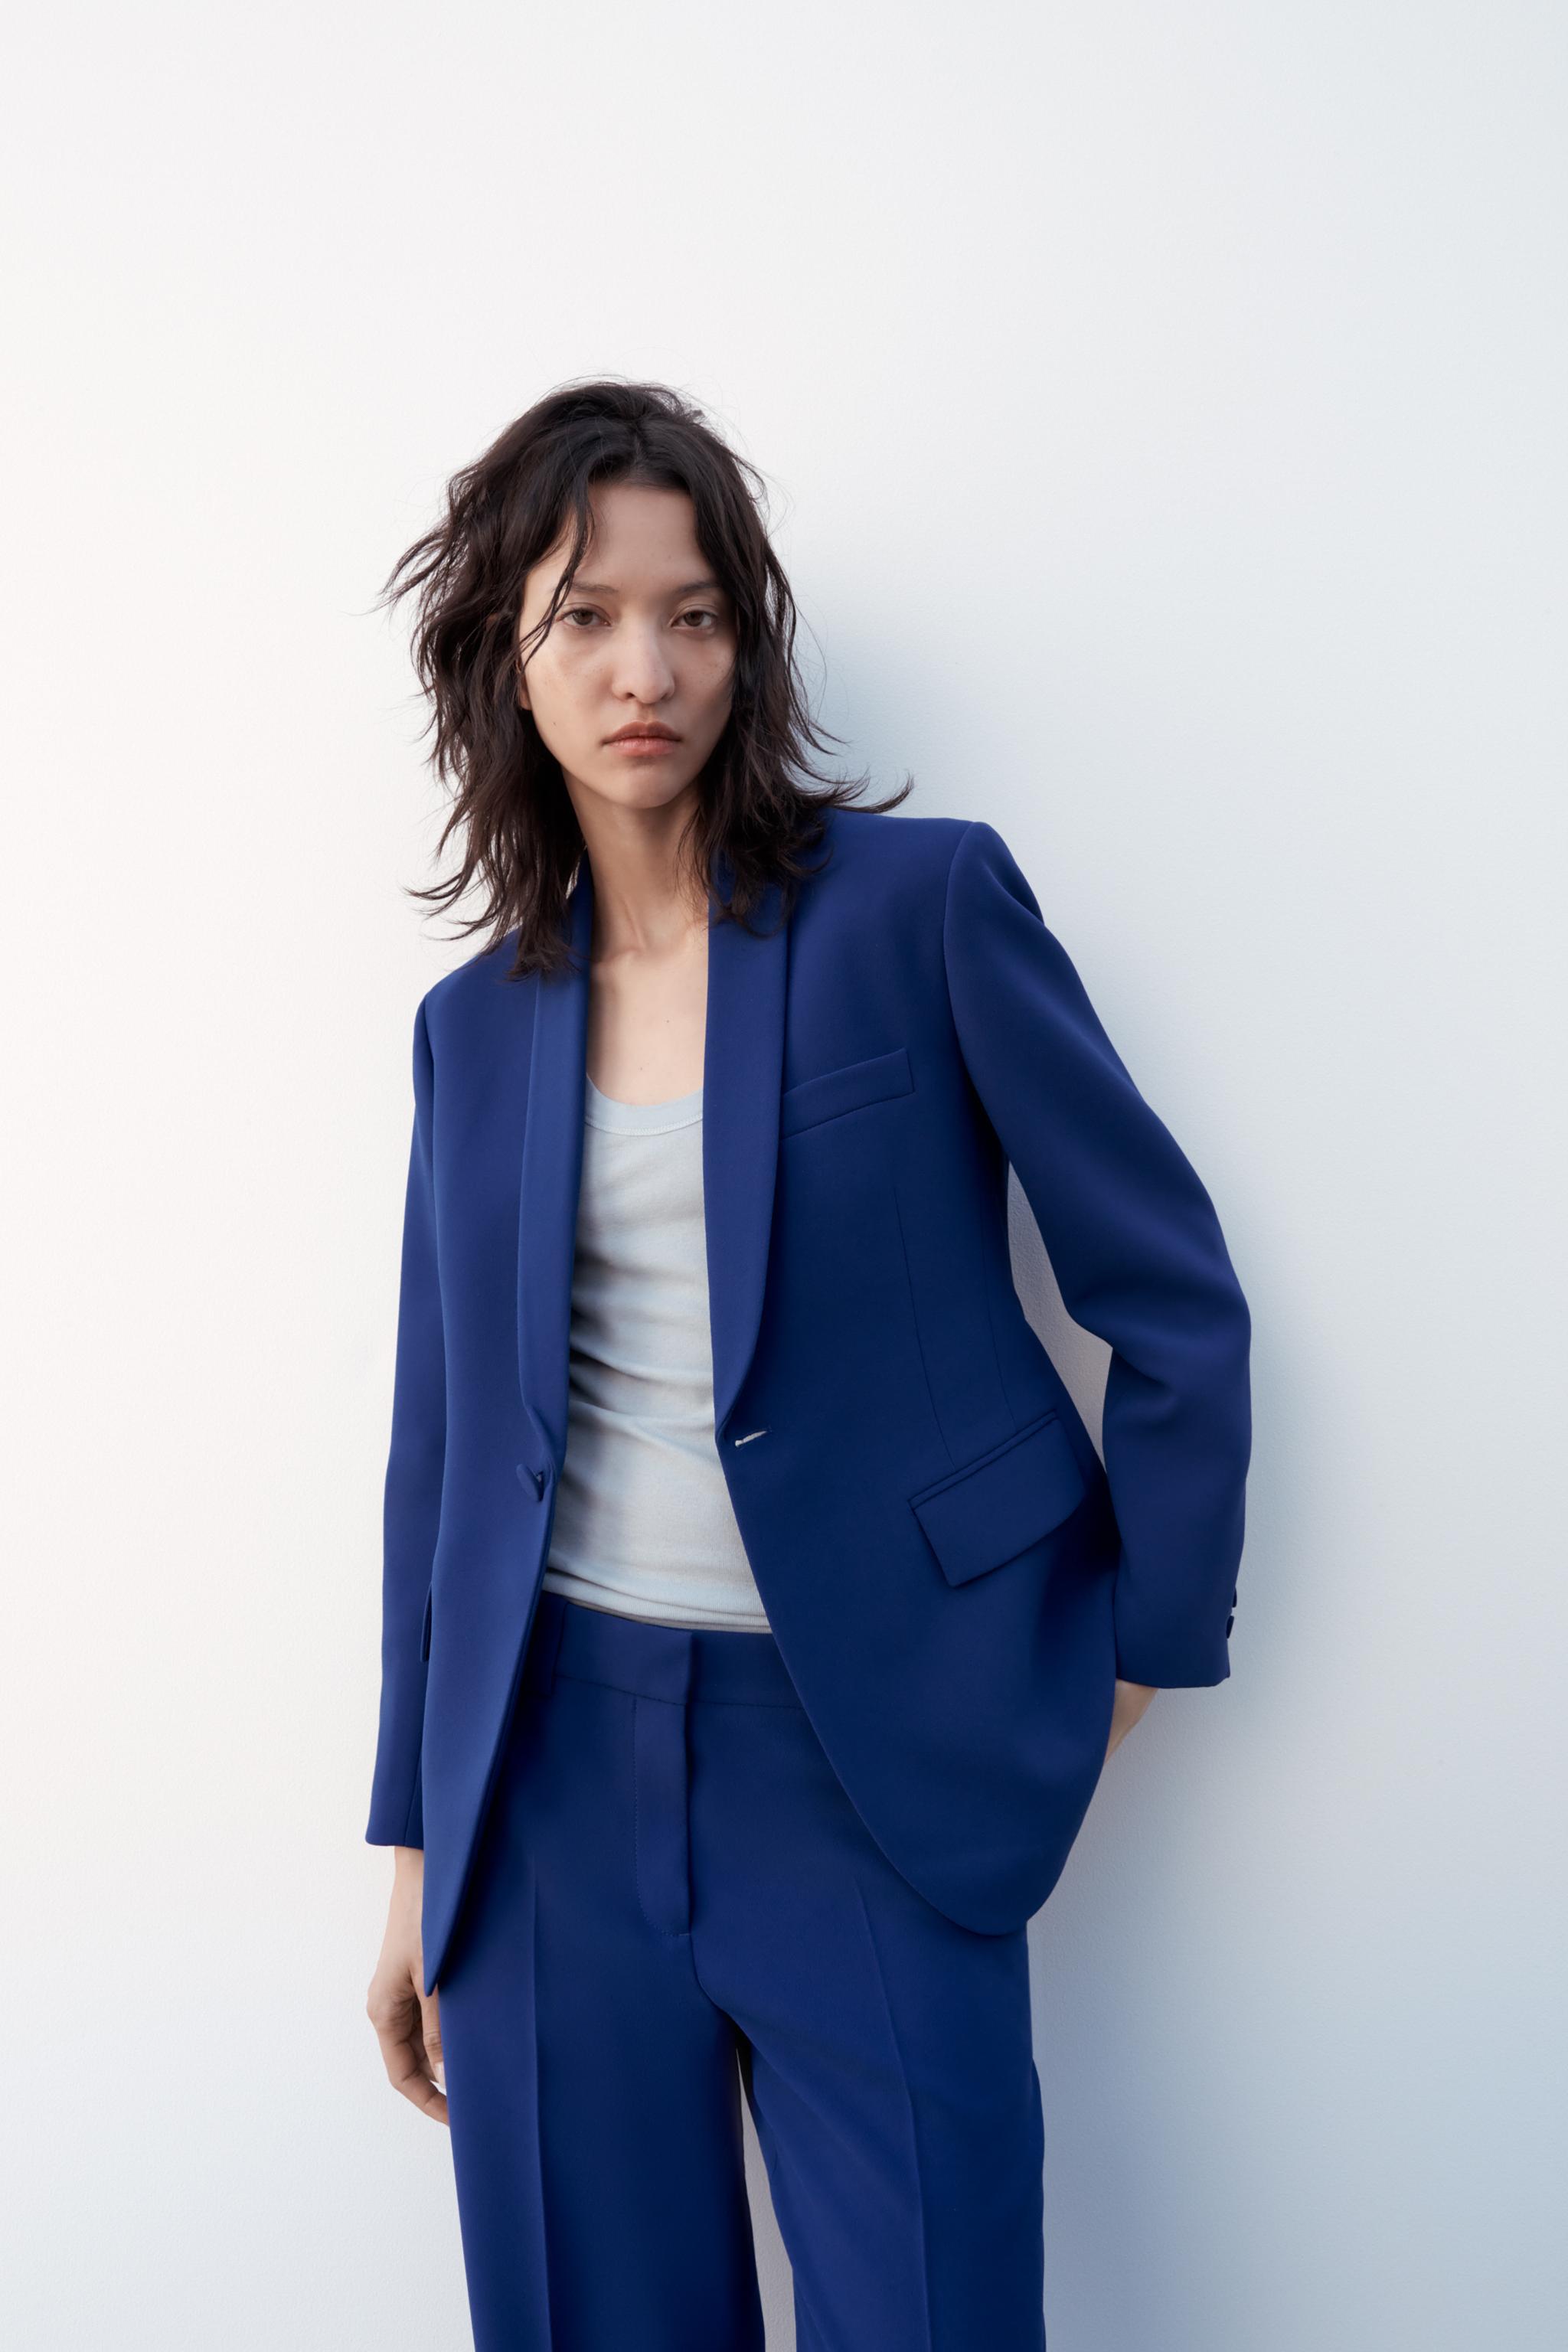 Zara women's blazer suits at Rs 4030, Women Blazer